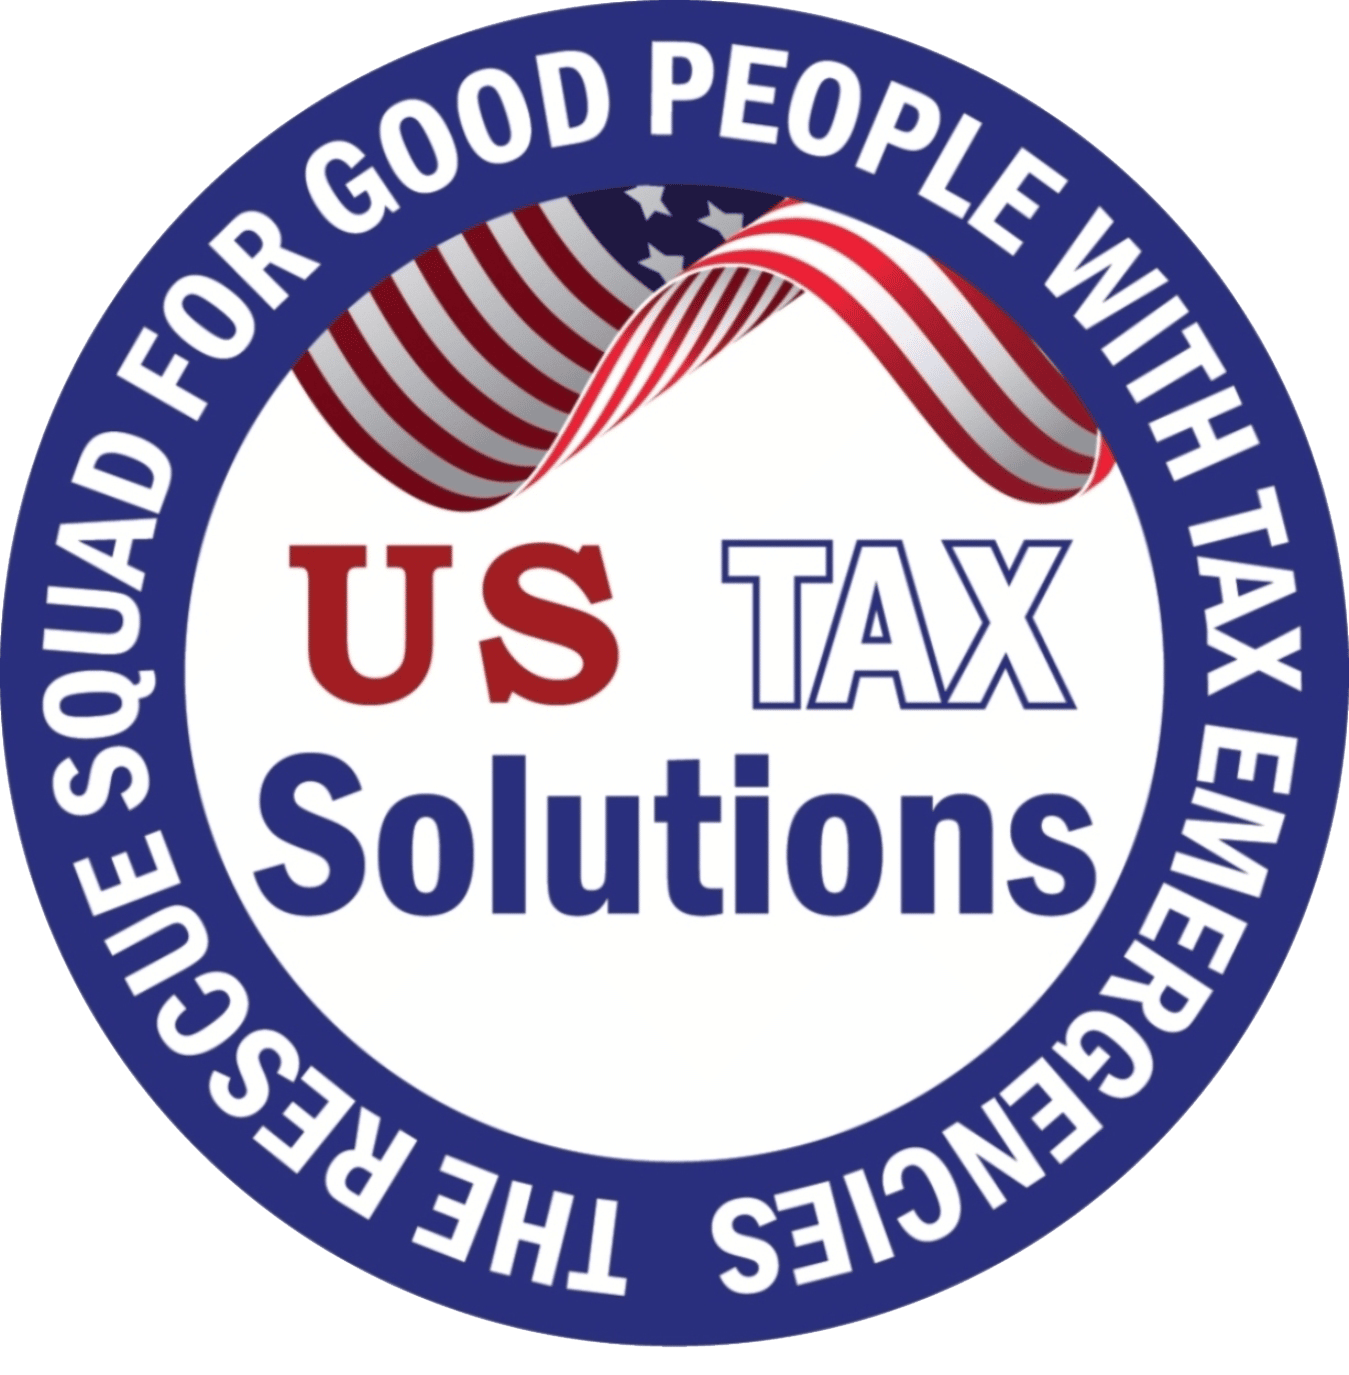 U S Tax Solutions